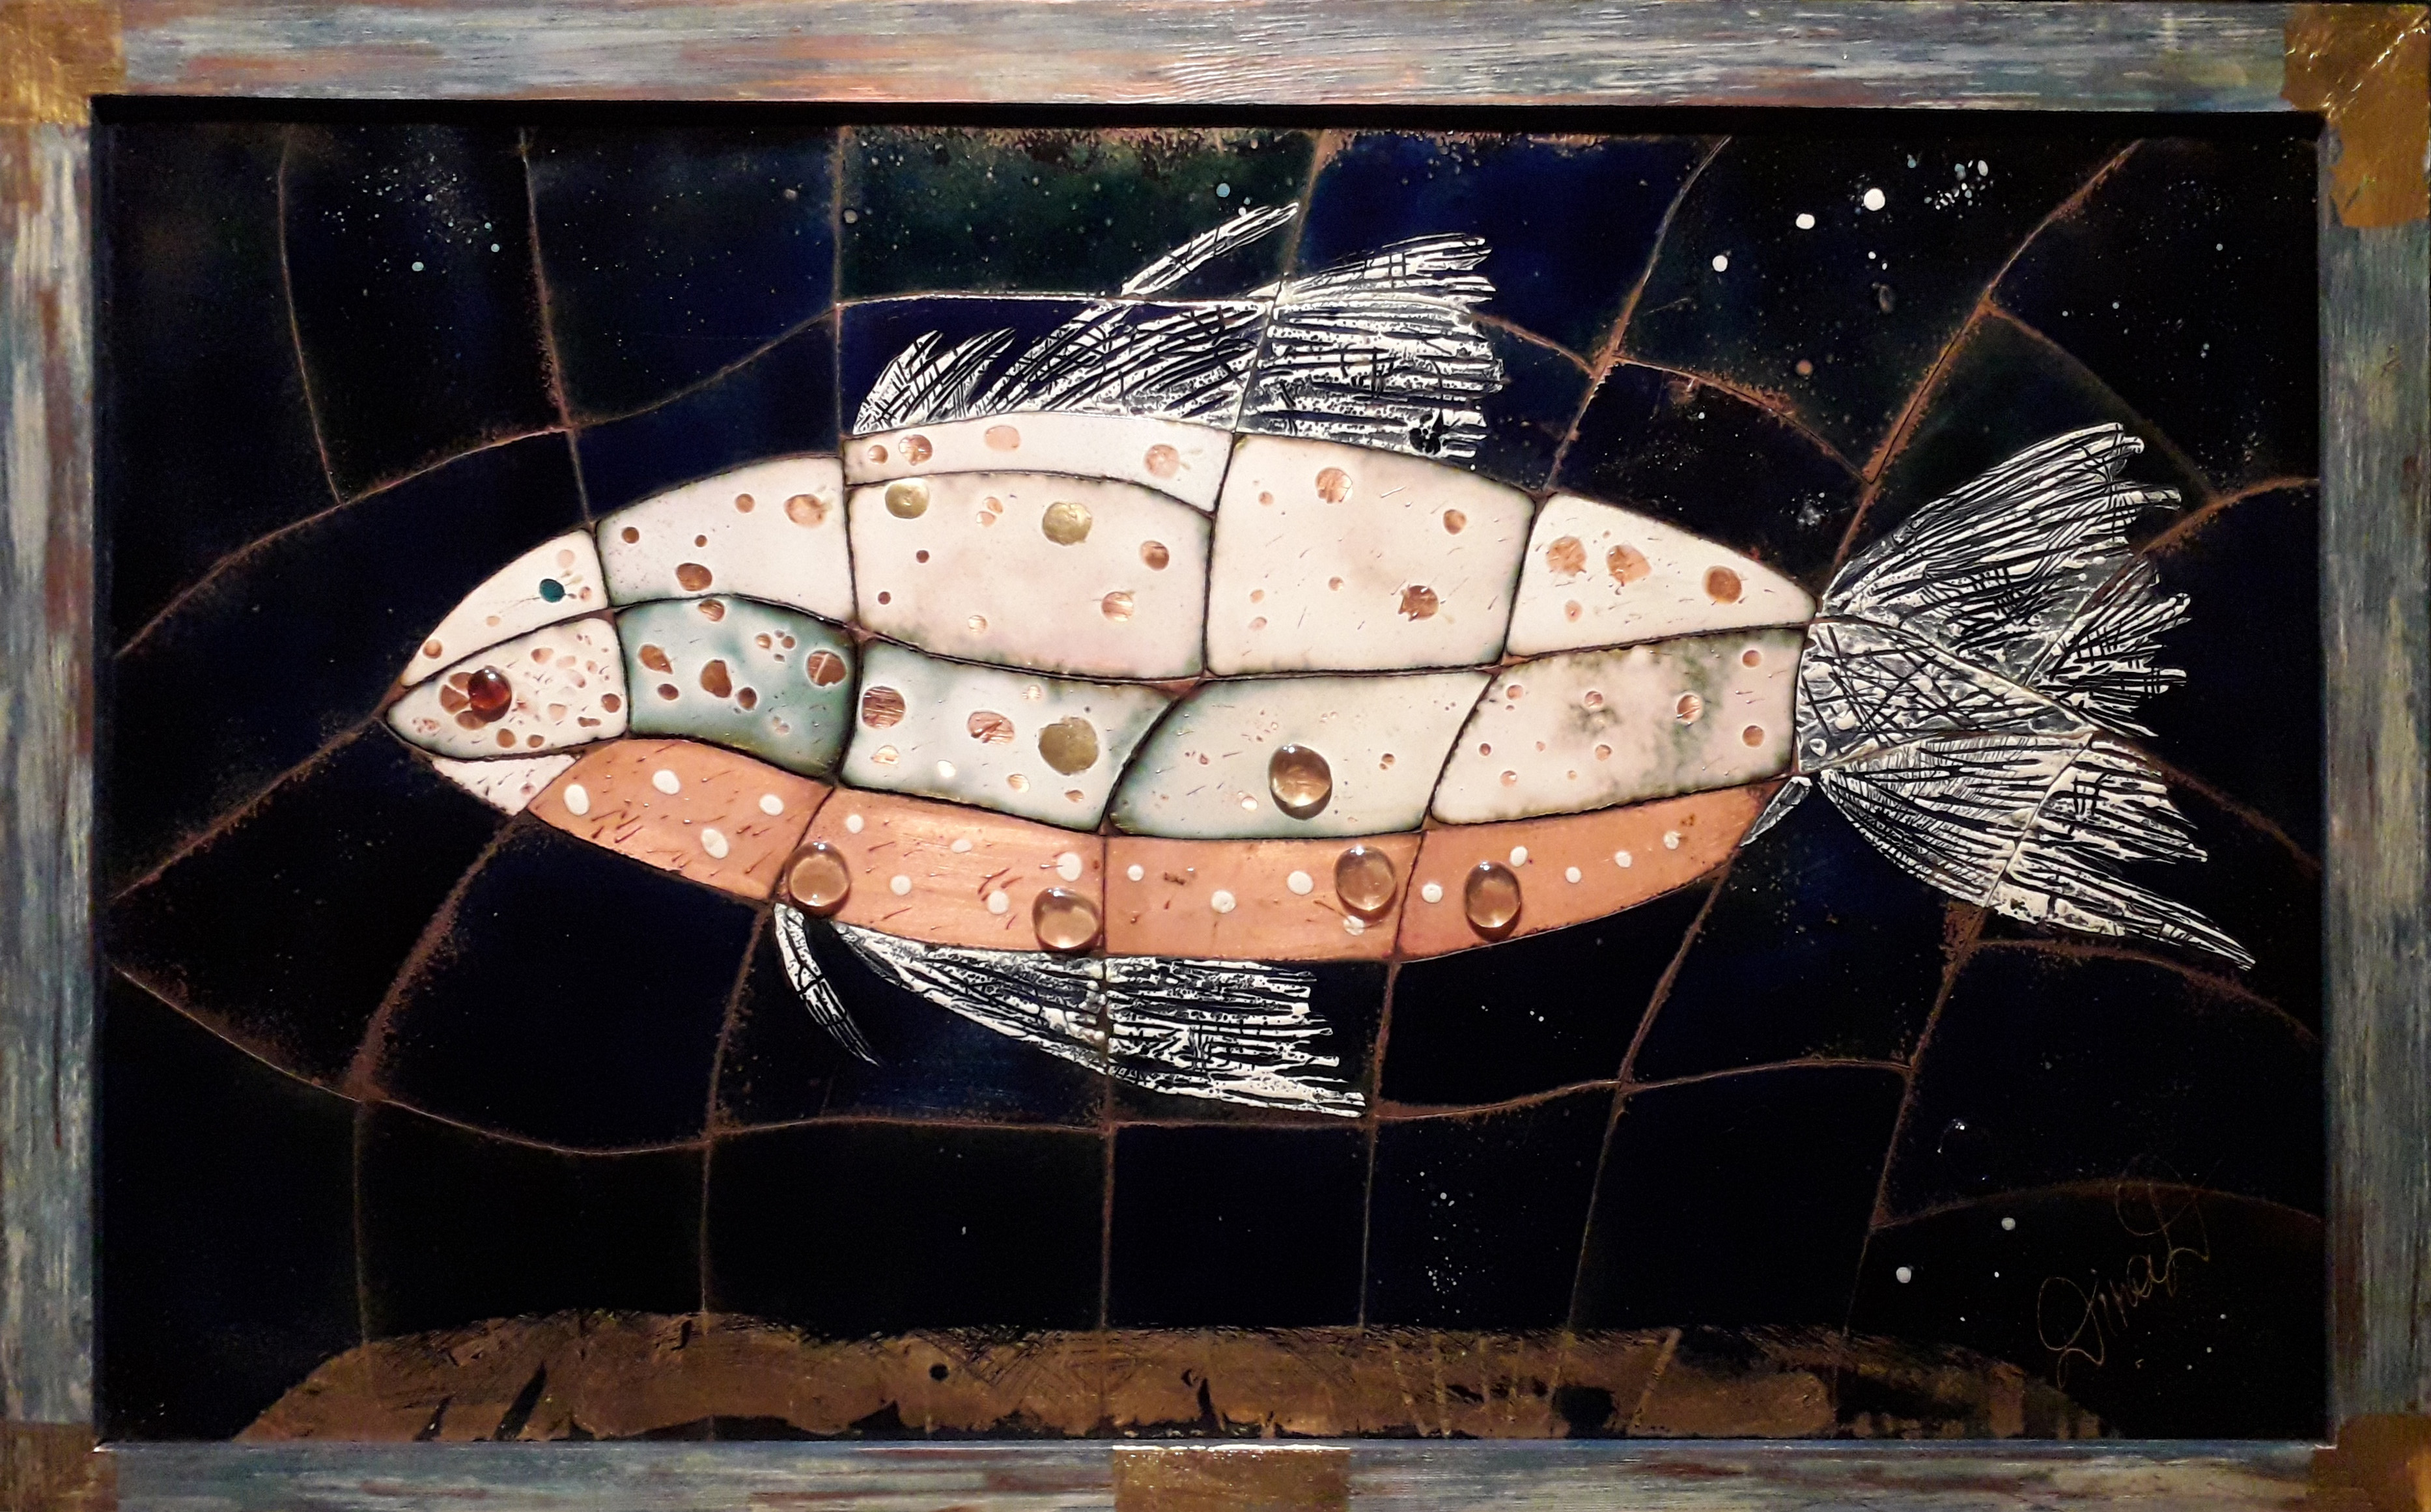 TMR 28682 D.Dubiņa. Emaljas glezna “Nārstojošā zivs”. 2012. 71 x 1,13 m� tehnika- emalja, varš, datorgrafika..jpg